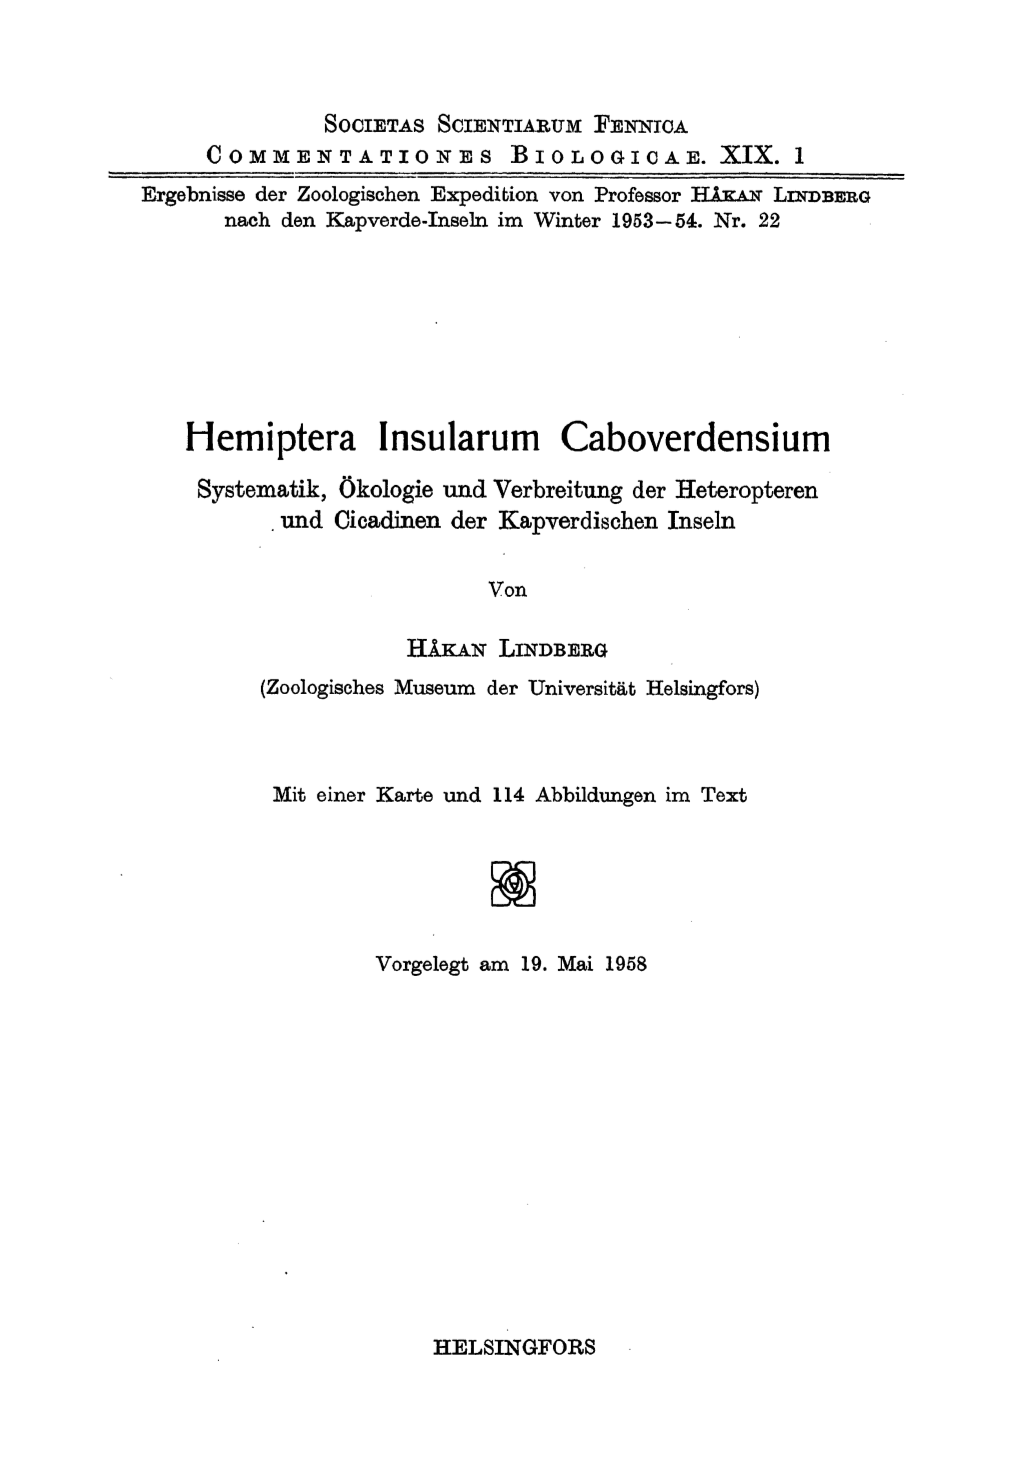 Hemiptera Insularum Caboverdensium Systematik, Okologie Und Verbreitung Der Heteropteren Und Cicadinen Der Kapverdischen Inseln